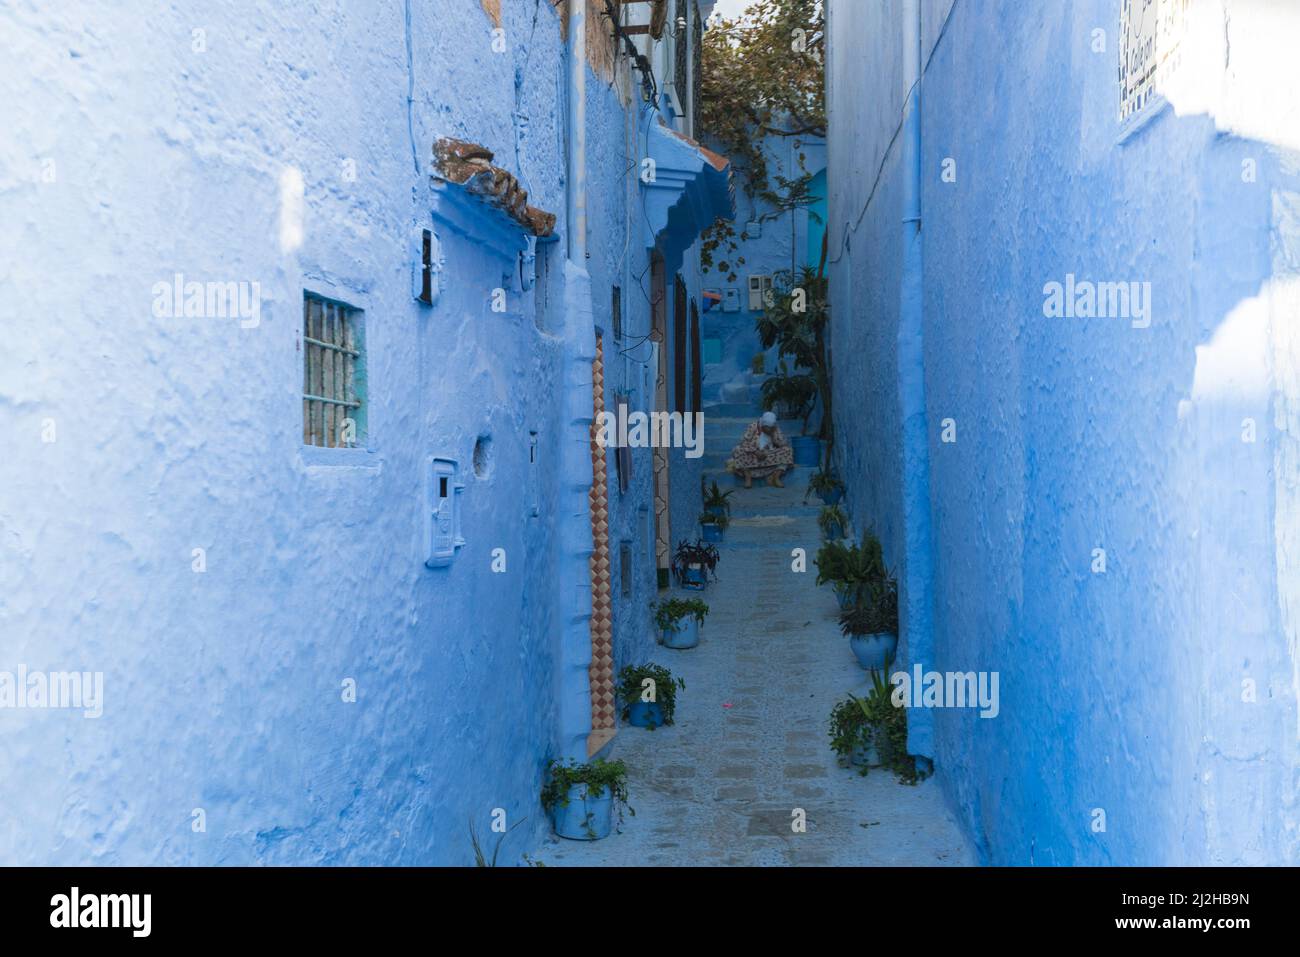 Marruecos, Chefchaouen, callejón estrecho y casas azules tradicionales Foto de stock